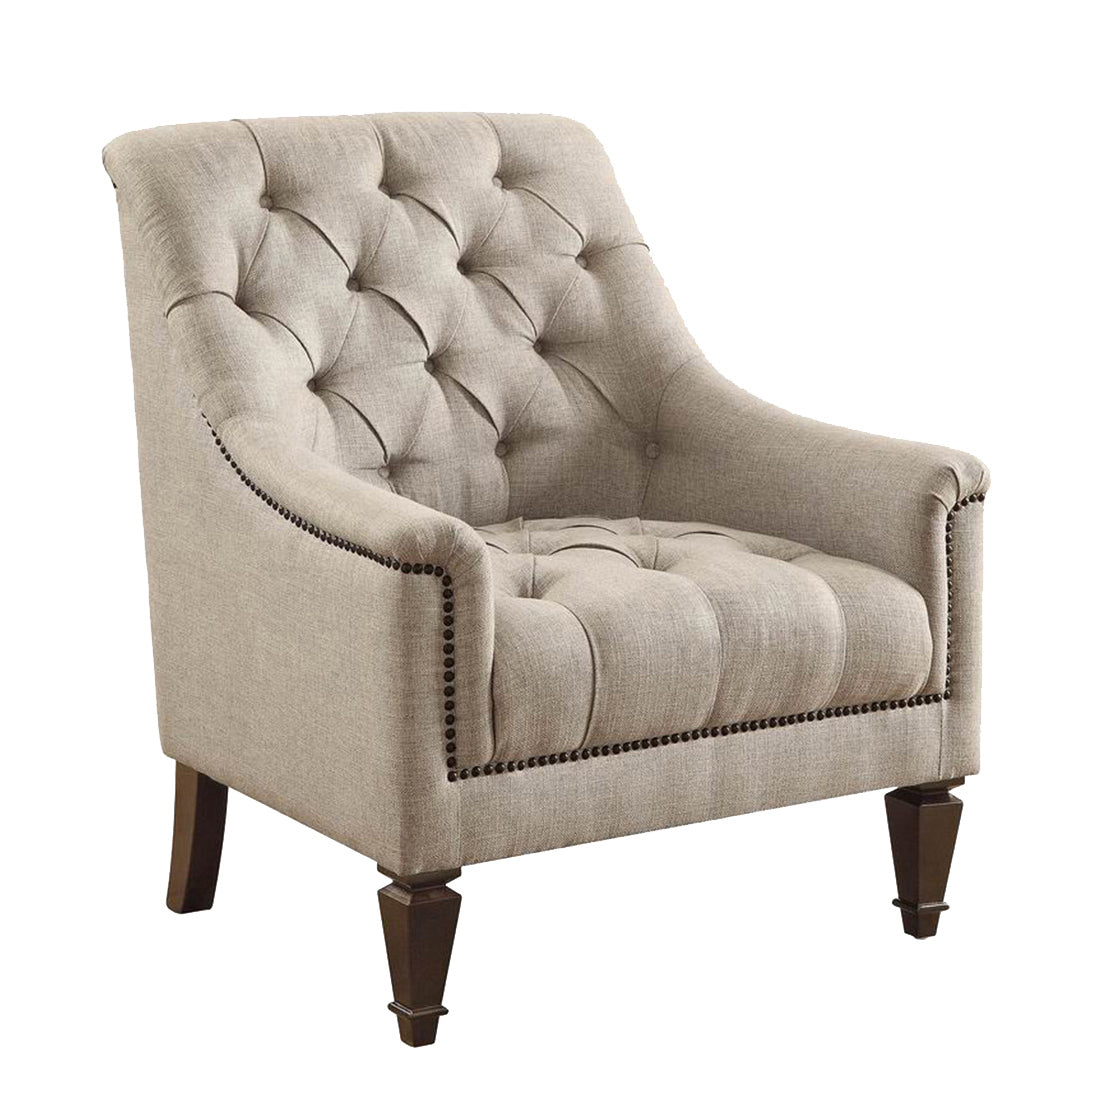 Avonlea Upholstered Tufted Living Room Set Grey - 505641-S3